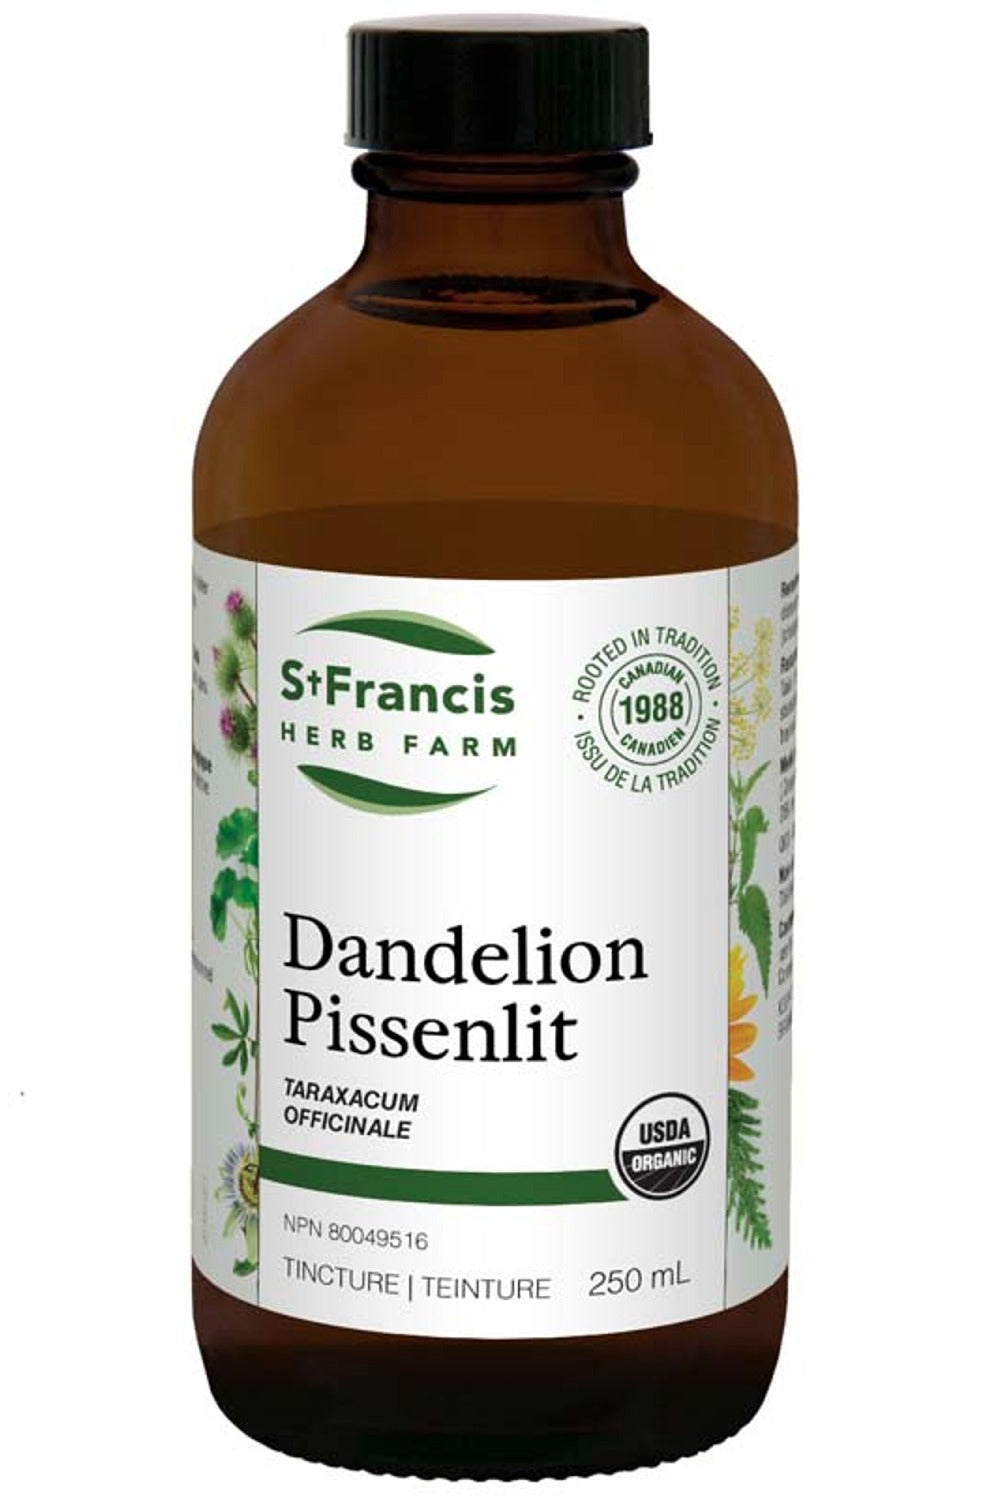 ST FRANCIS HERB FARM Dandelion (250 ml)